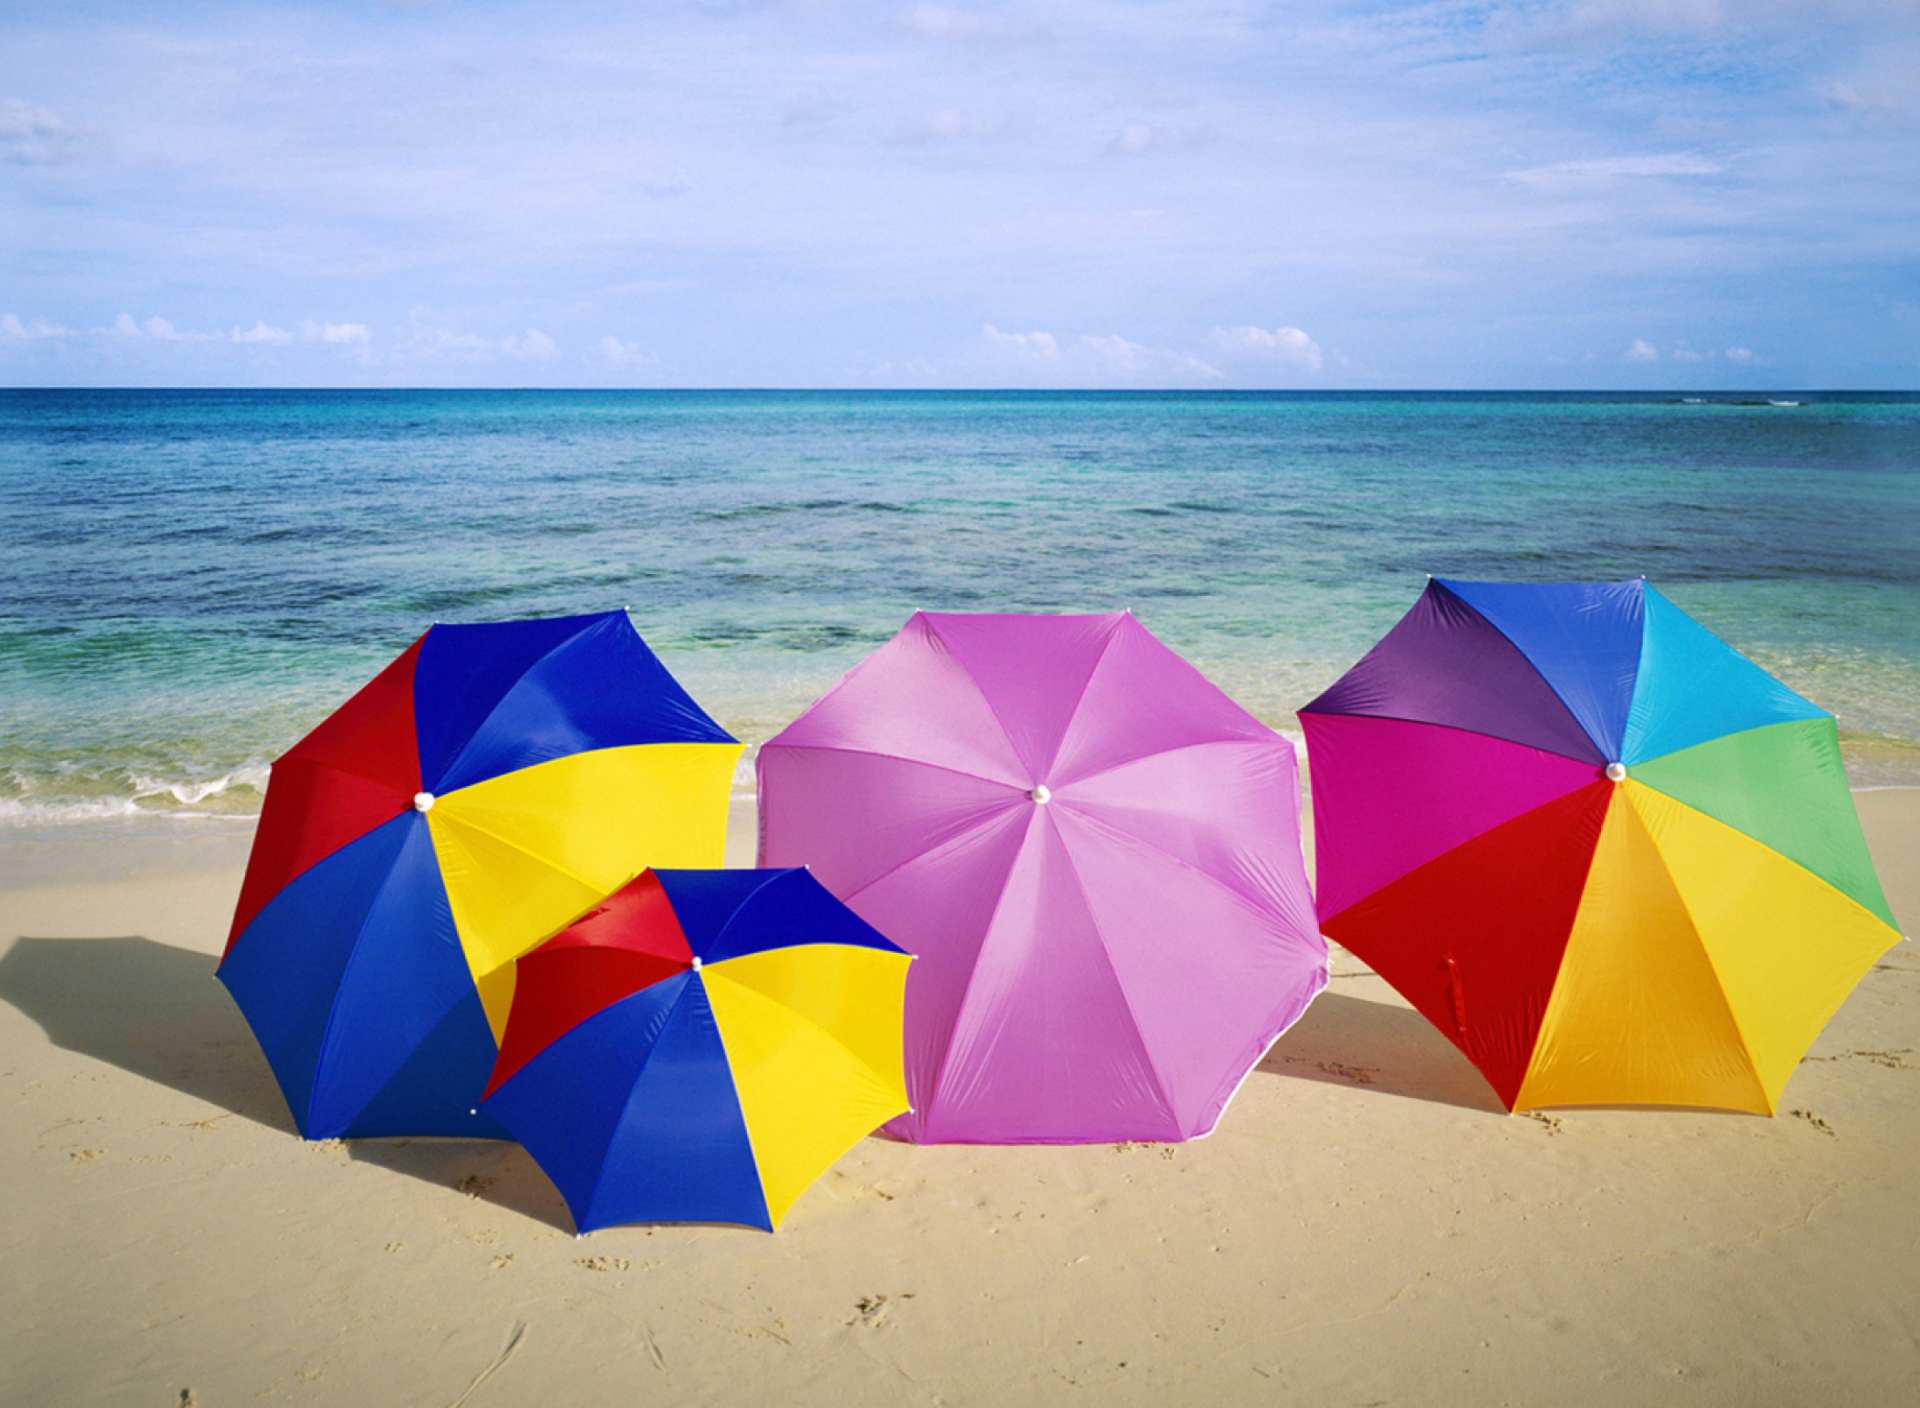 Обои Umbrellas On The Beach 1920x1408